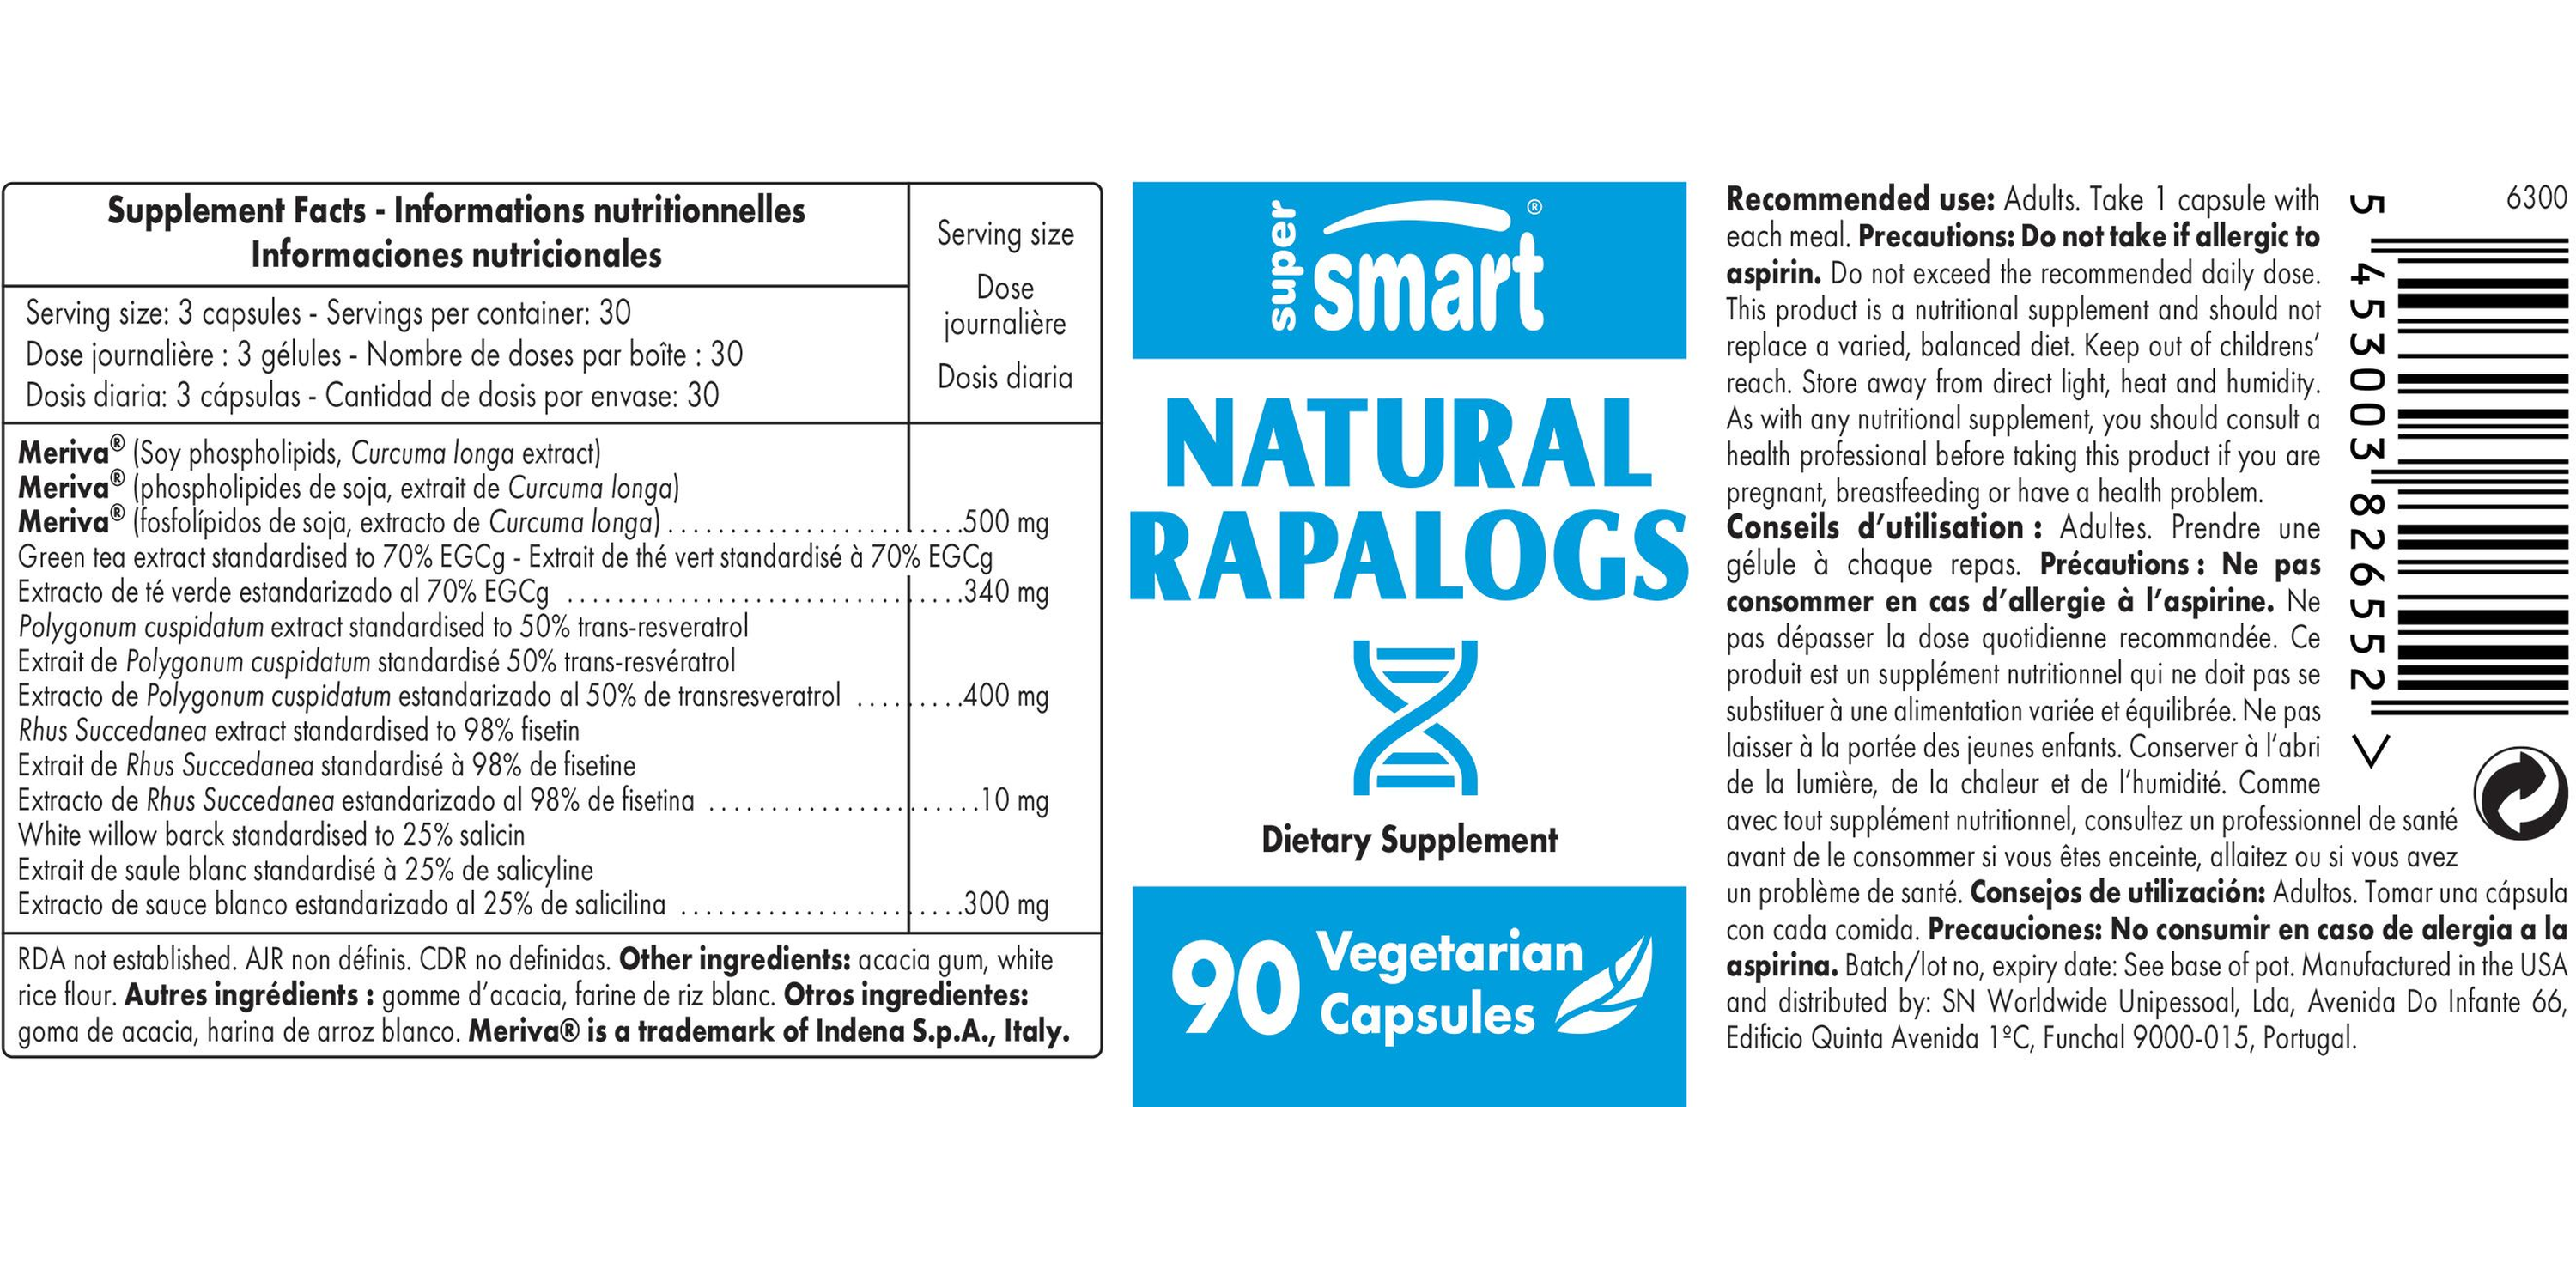 Natural Rapalogs